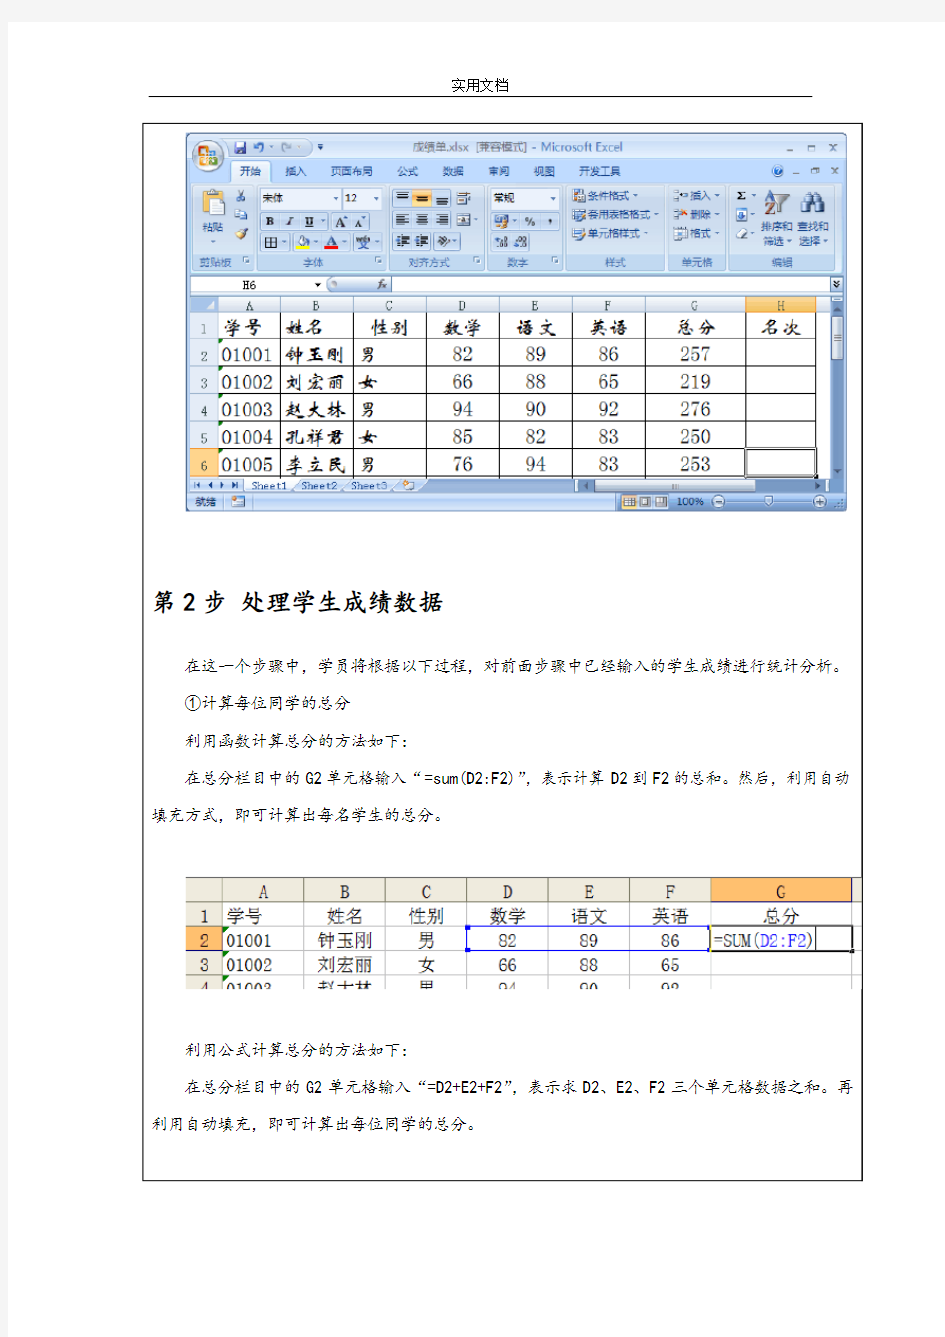 教材范例_利用Excel统计分析报告学生成绩